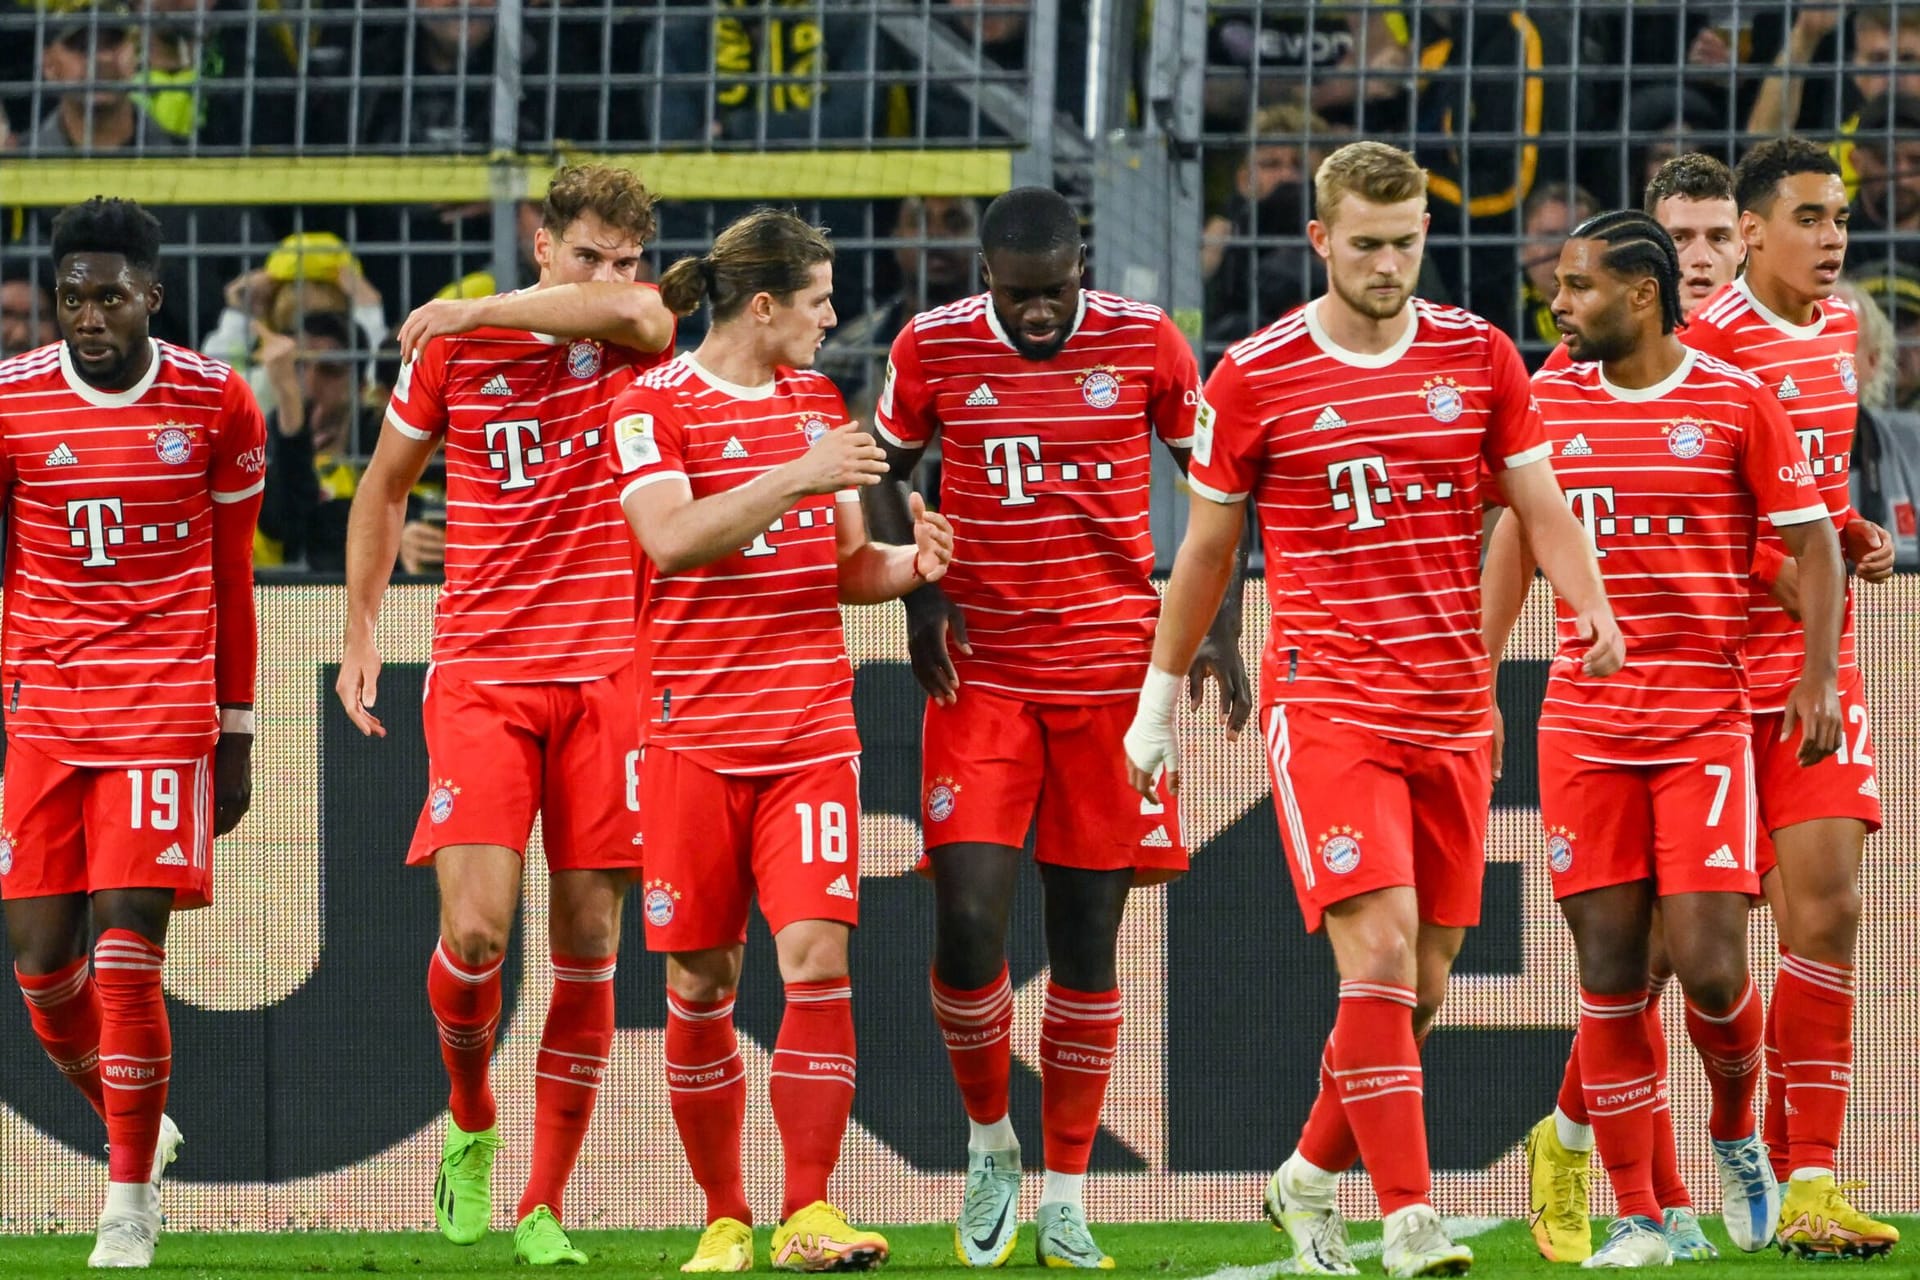 Der FC Bayern verspielt bei Borussia Dortmund eine 2:0-Führung und muss sich am Ende mit einem 2:2 im Topspiel begnügen. Dabei gibt es einige Totalausfälle, die schon zur Halbzeit abgestraft werden, aber auch Lichtblicke. Die Spieler des FC Bayern in der Einzelkritik.